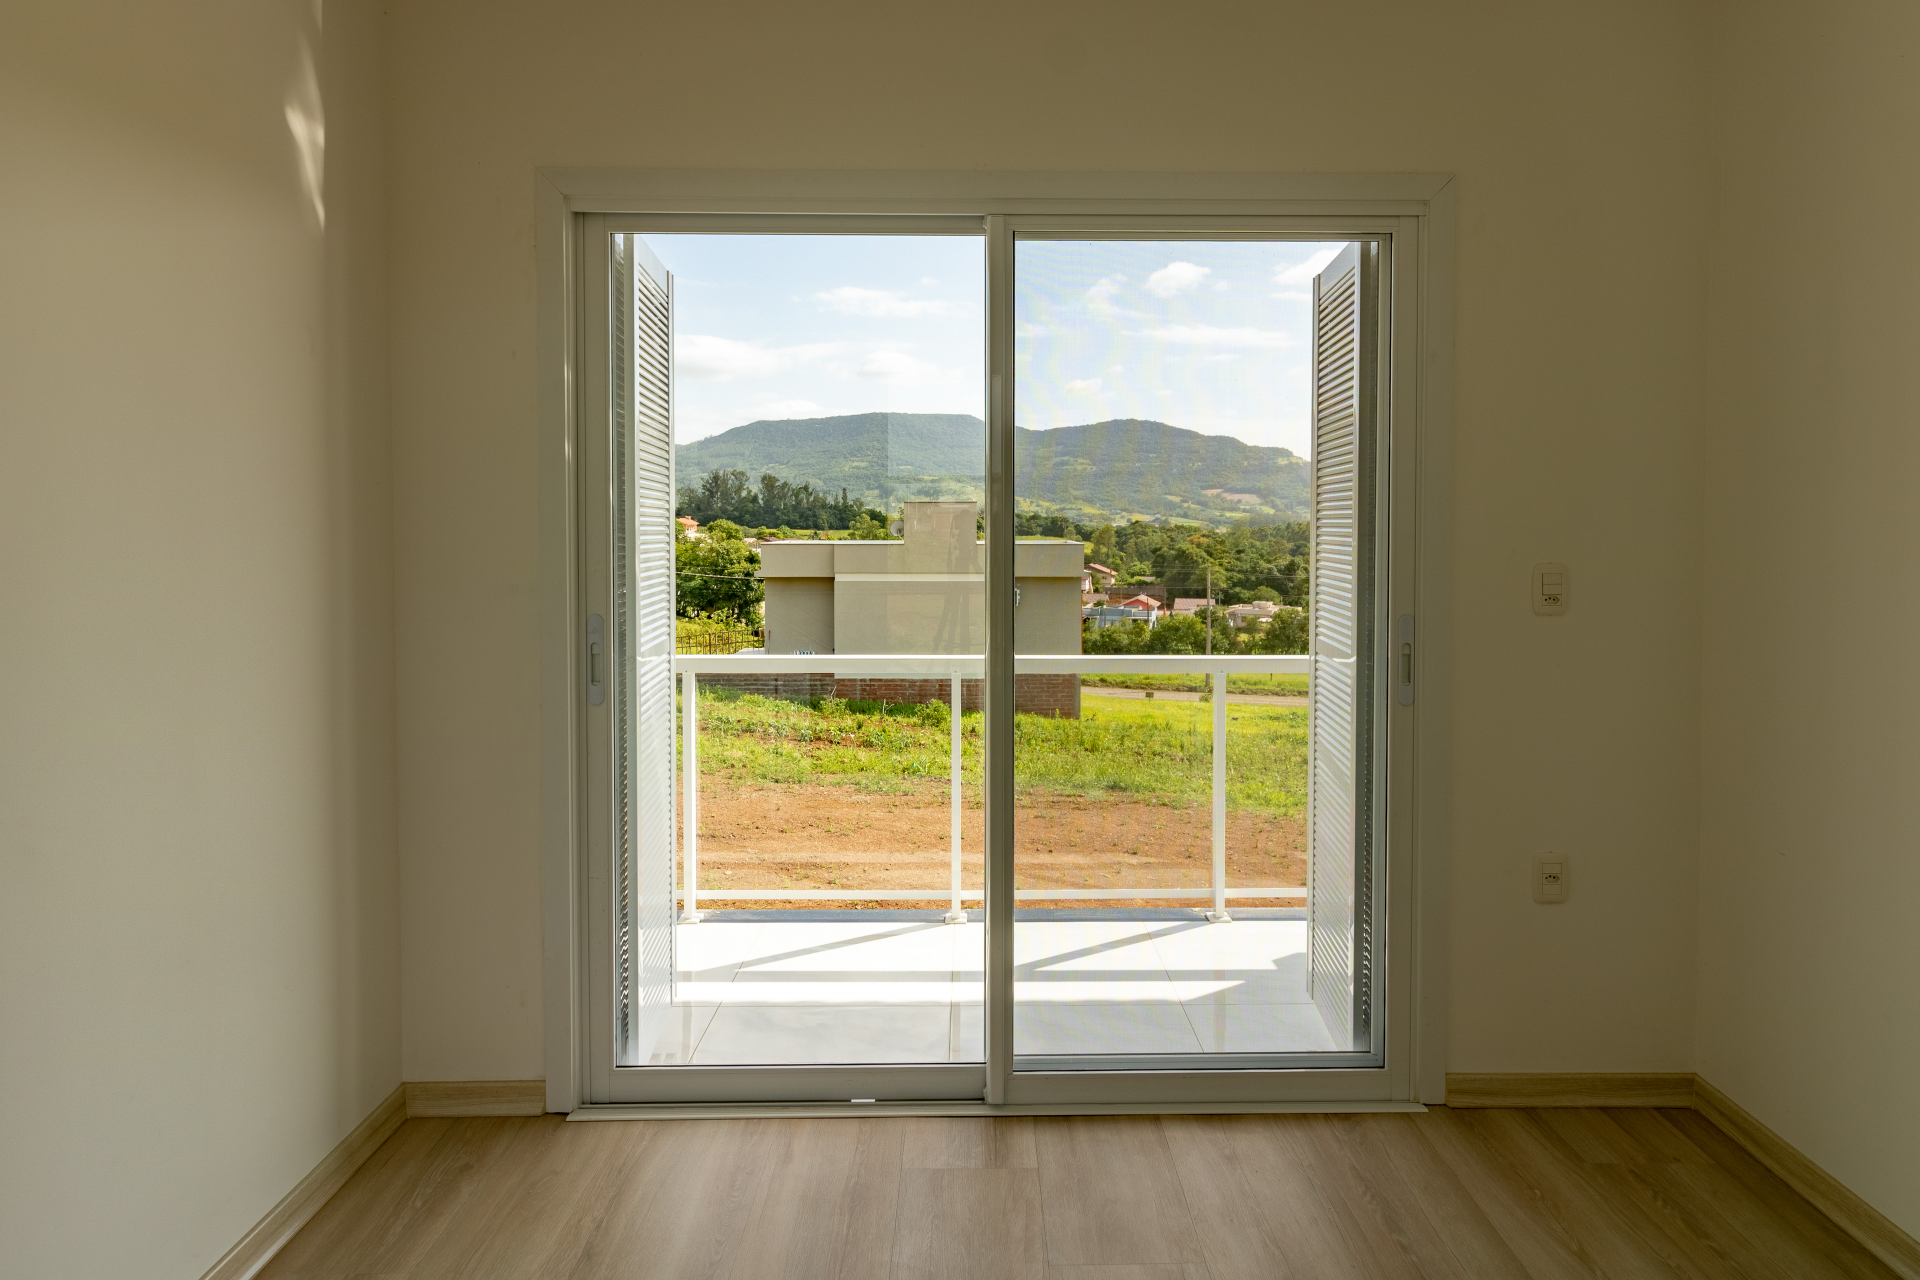 25 ideias de ABERTURAS EM ALUMÍNIO  porta de aluminio branco, portas de  madeira com vidro, janela de banheiro